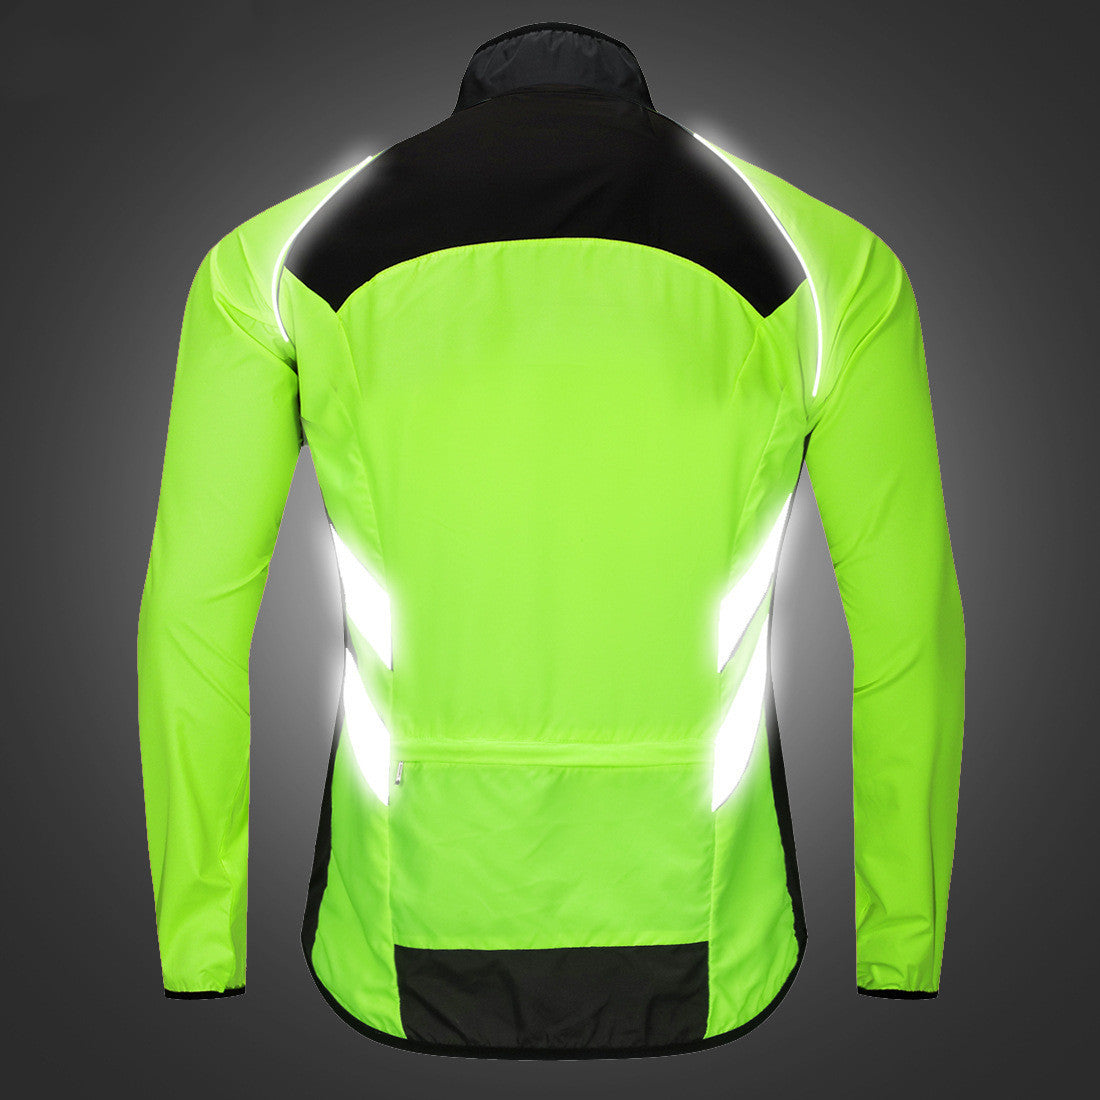 Cycling Fishing Reflective Jacket | Cycling Jacket |Planet Jerseys USA